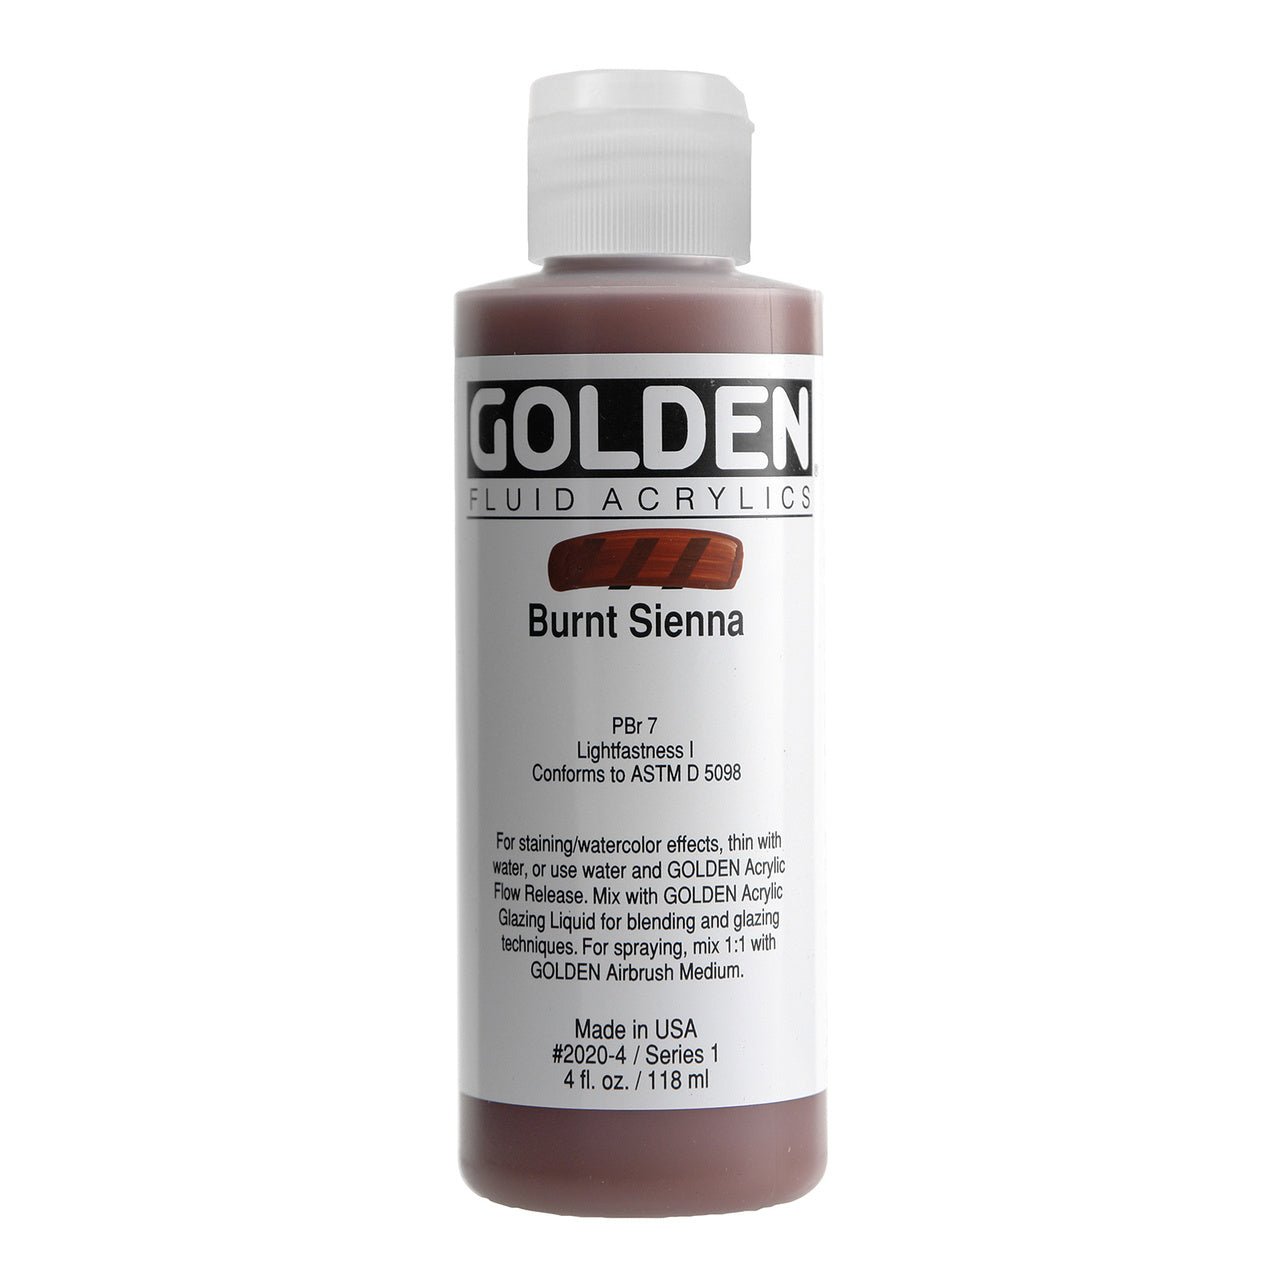 Golden Fluid Acrylic Burnt Sienna 4 oz - merriartist.com